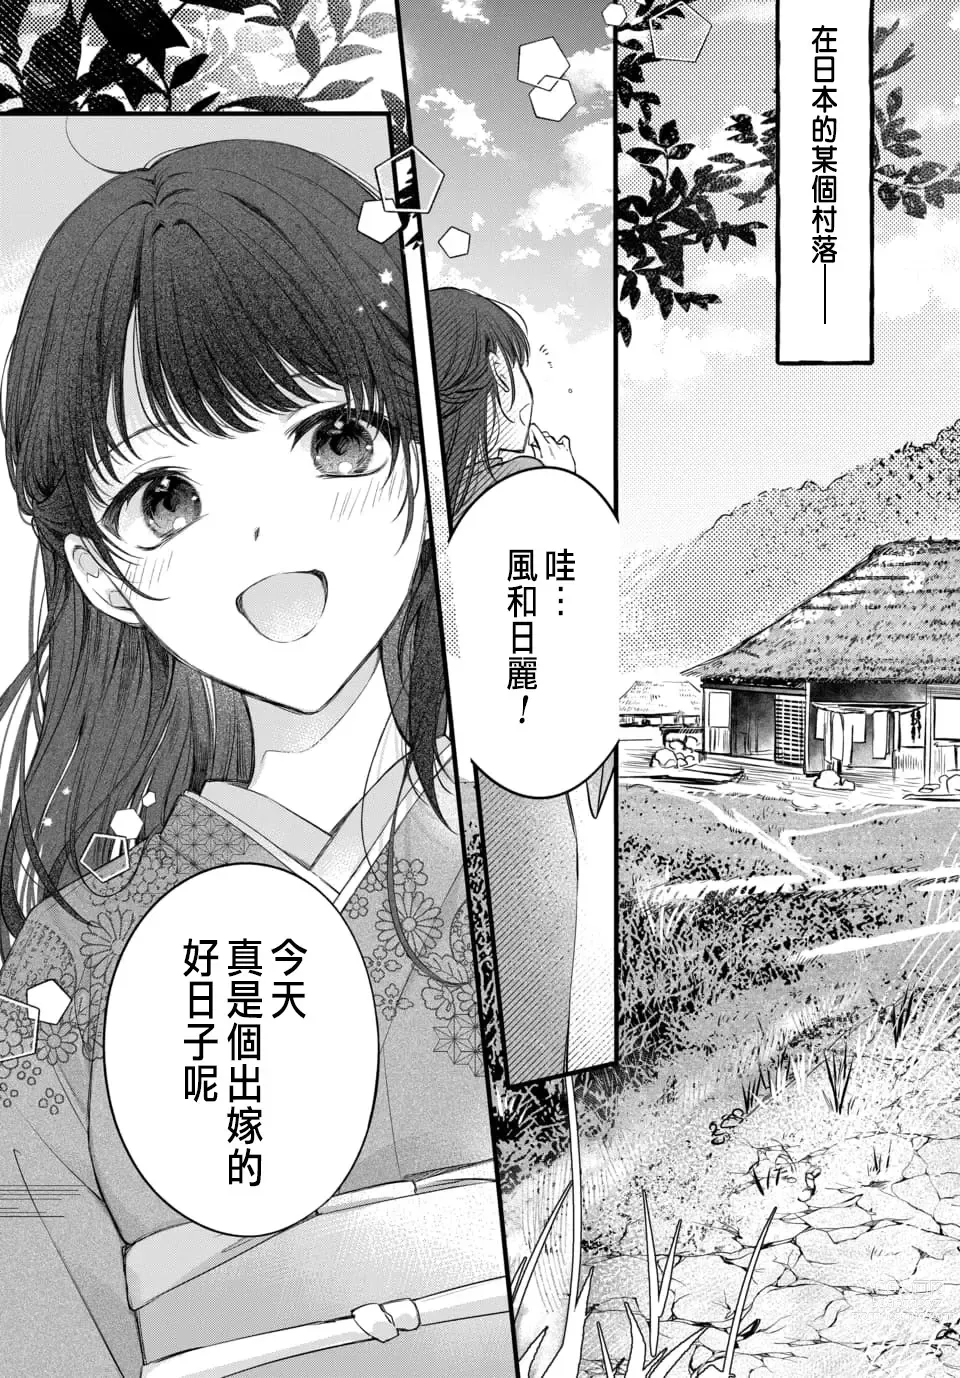 Page 5 of manga Tsuki e no Yomeiri 1-6